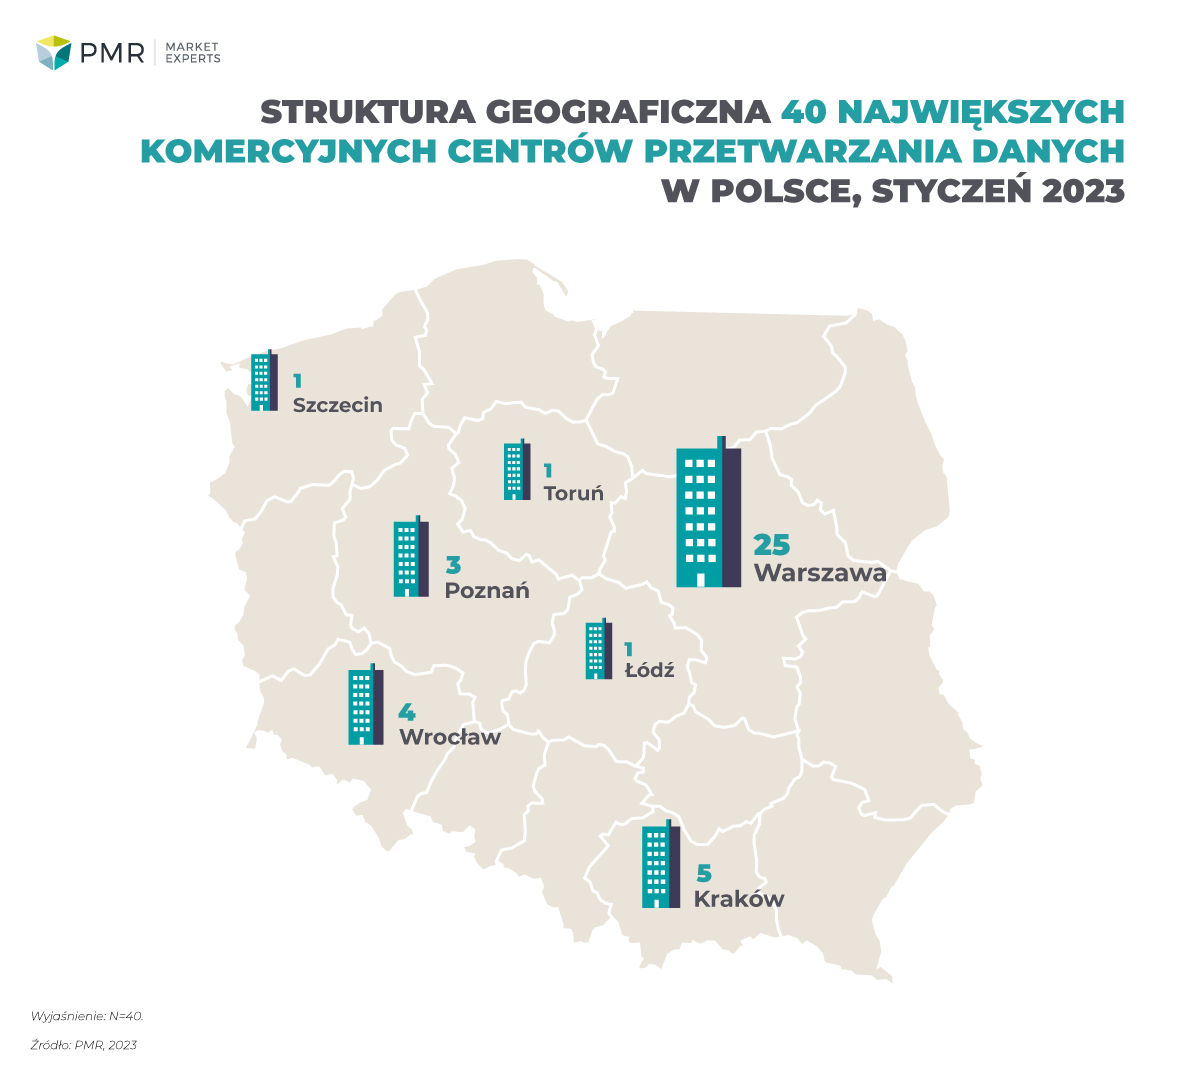 Struktura geograficzna 40 największych komercyjnych centrów przetwarzania danych w polsce, styczeń 2023